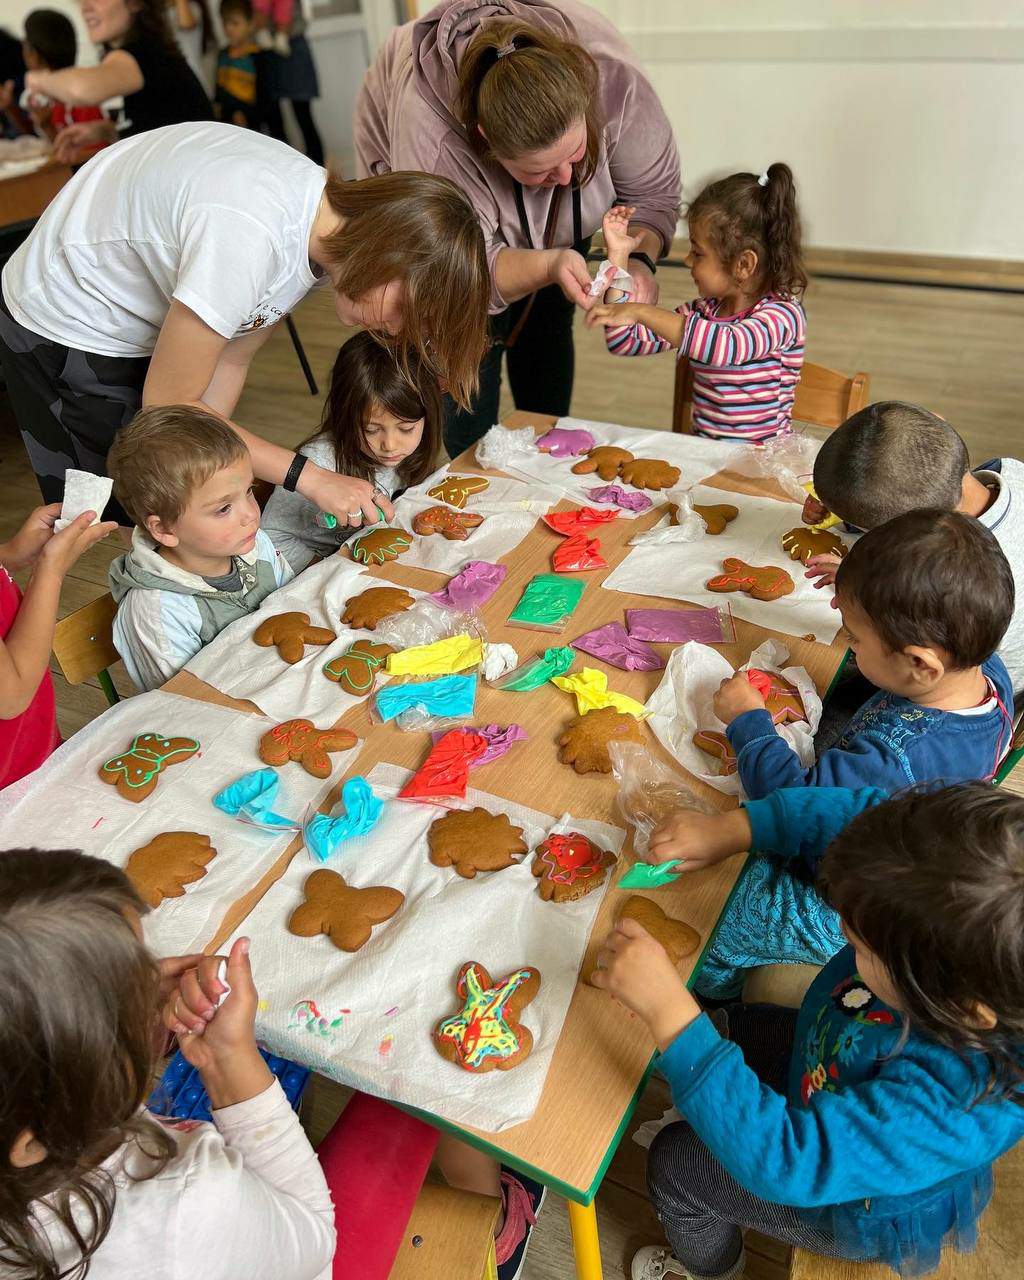 Fotografia ilustracyjna z małymi dziećmi przy stole lepiącymi ciastka